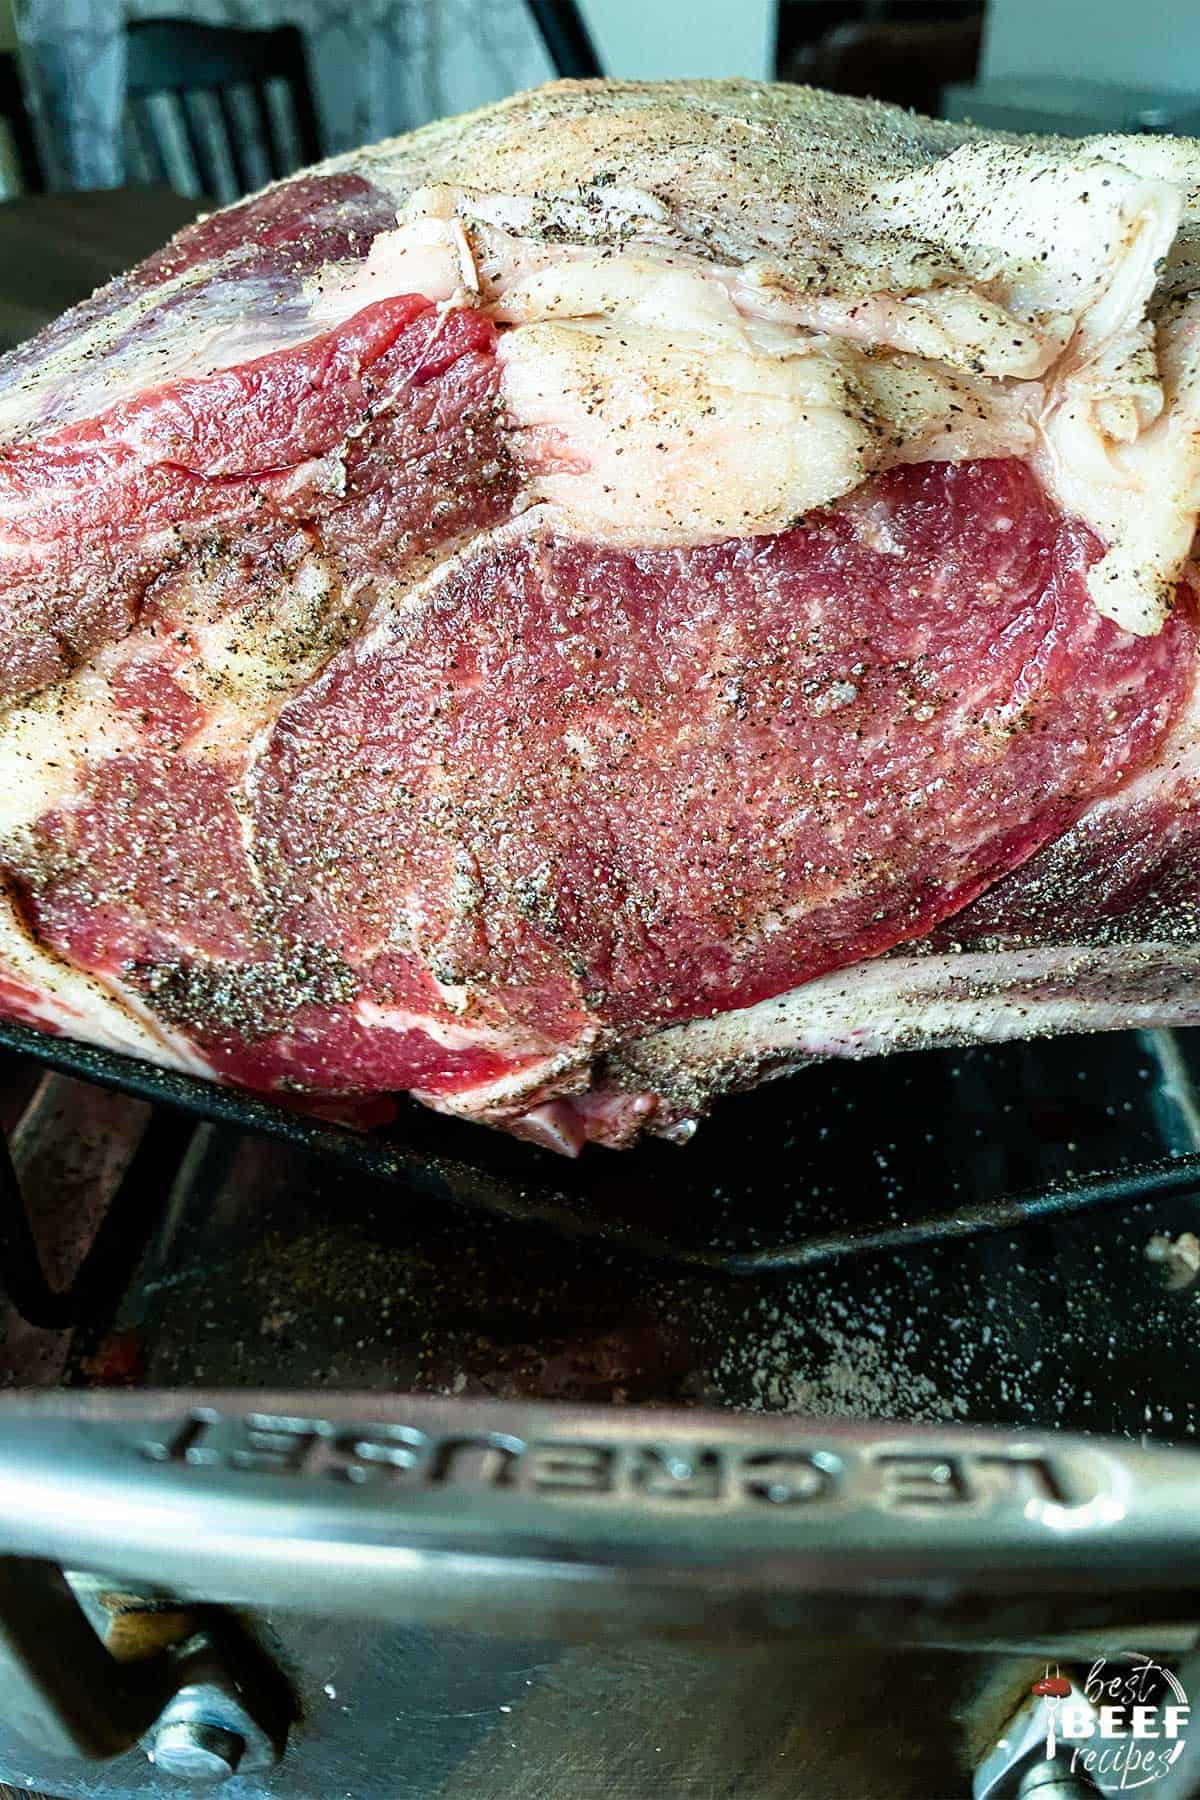 Prime rib seasoned on a roasting rack